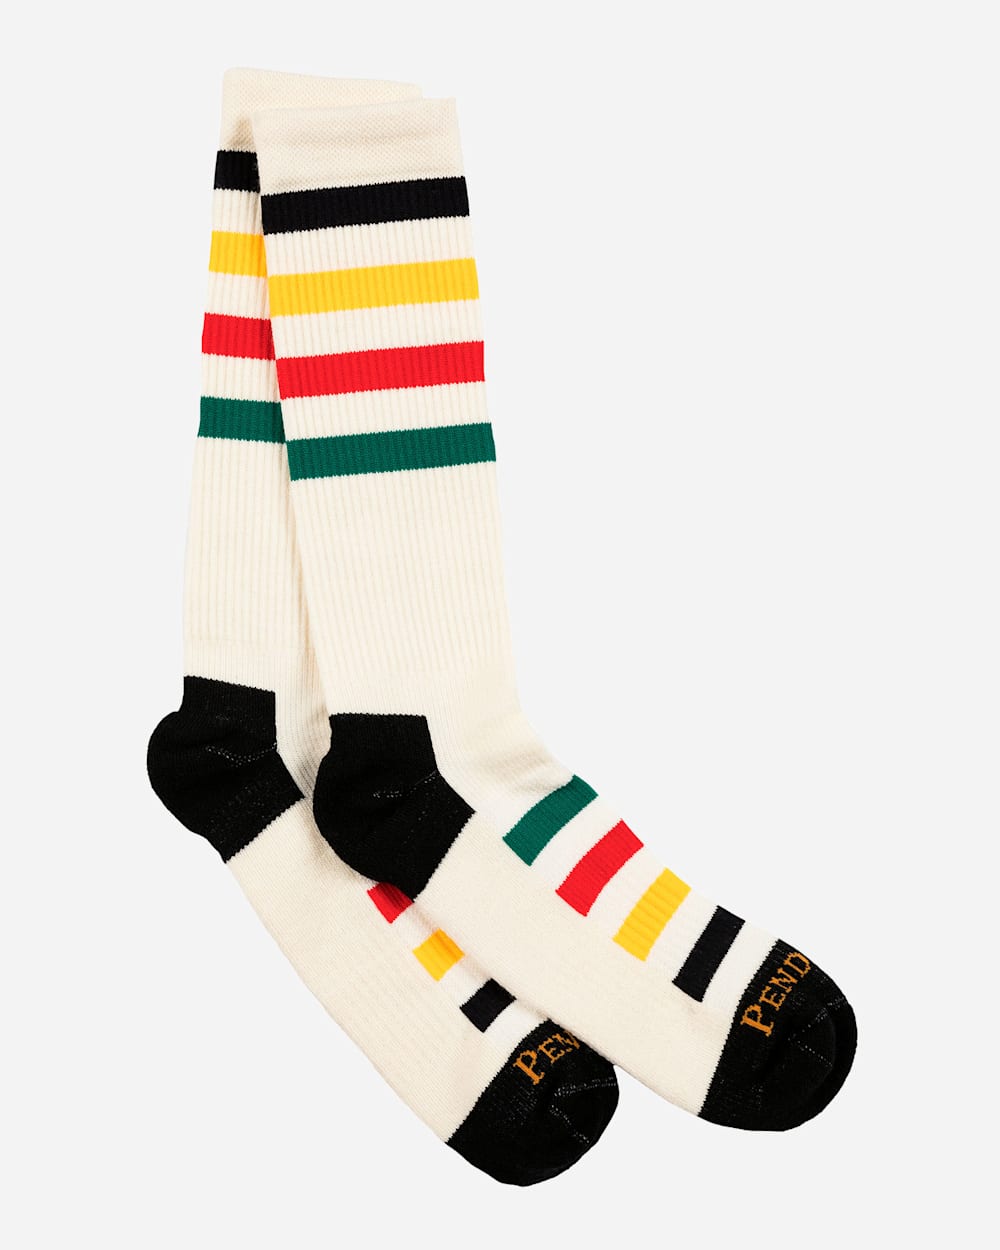 Men's White + Black Striped Crew Socks - Nothing New®